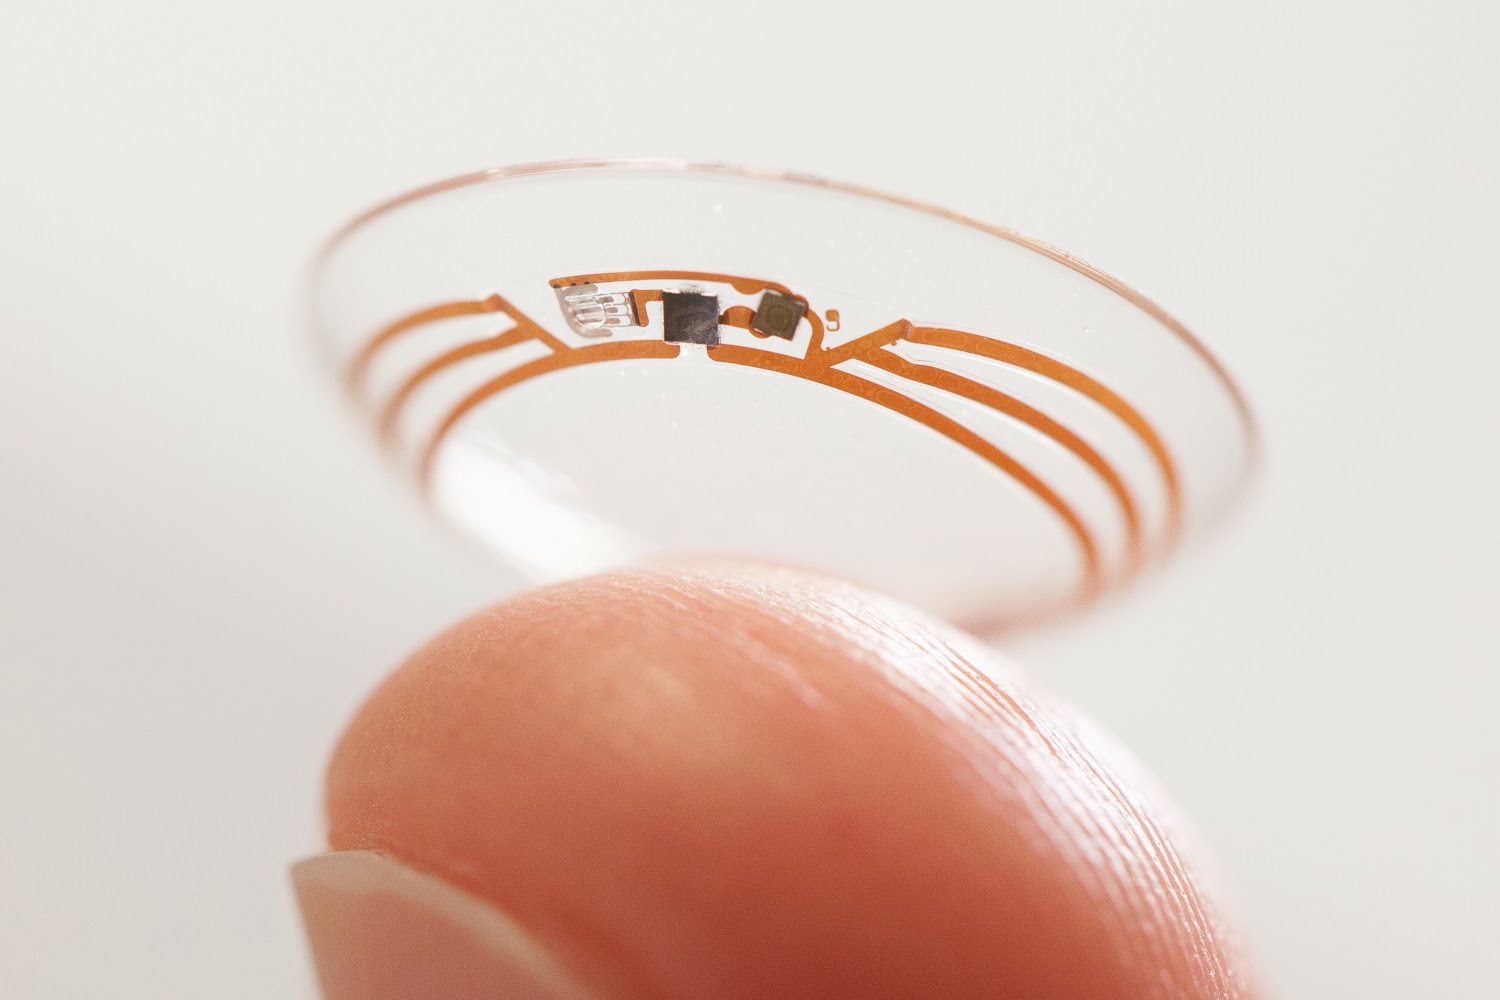 Google's Smart Contact Lenses: A Closer Look